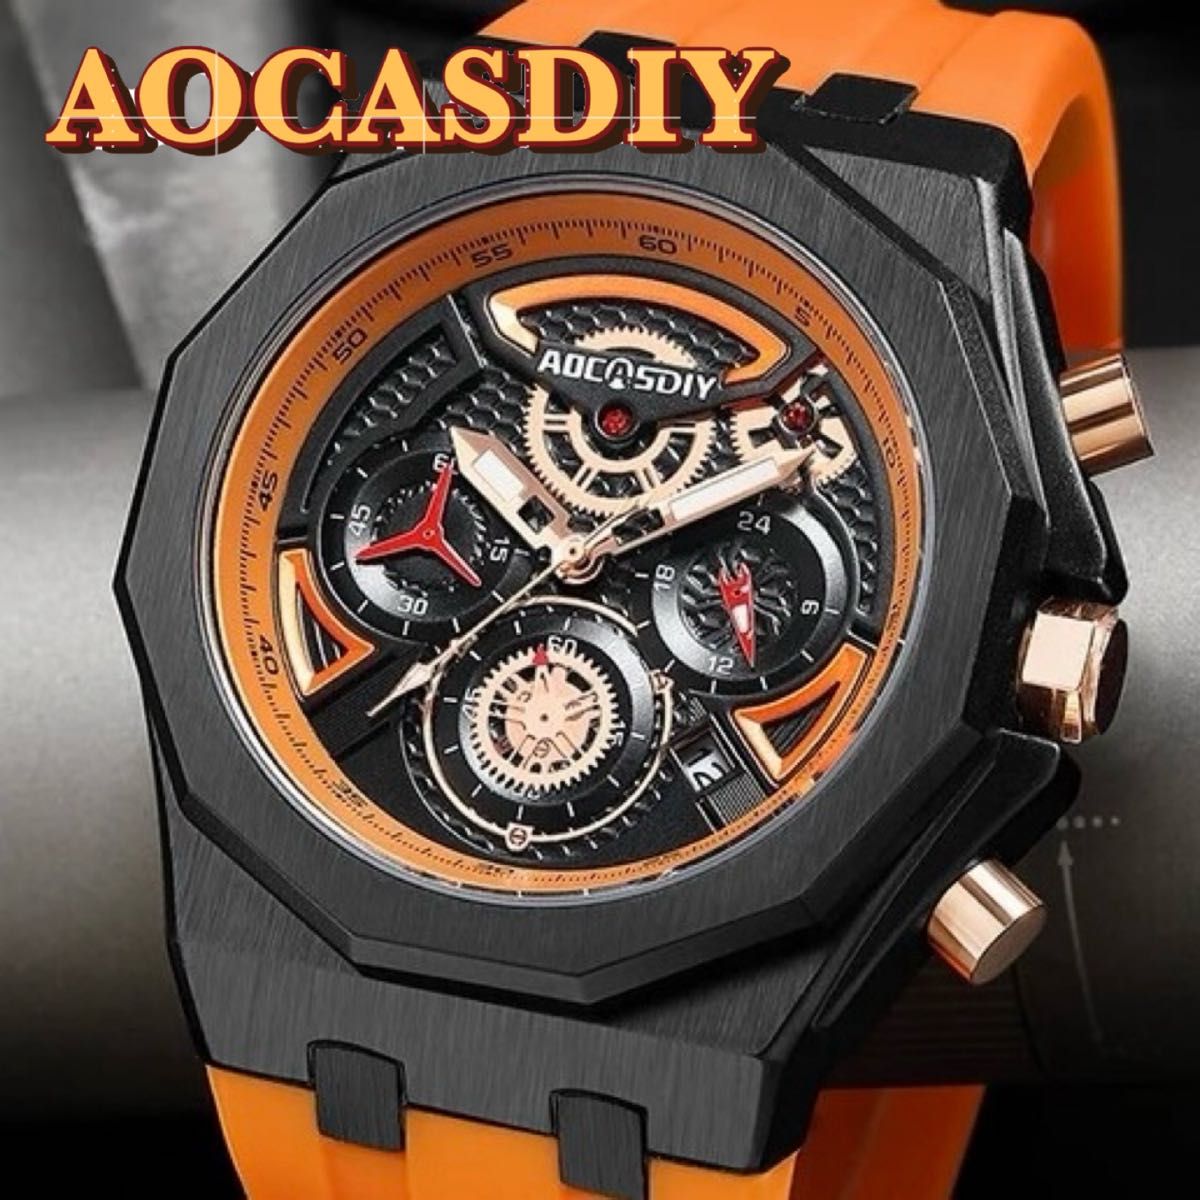 新品 AOCASDIY オマージュクロノグラフ ウォッチ ラバーストラップ メンズ腕時計 オレンジ